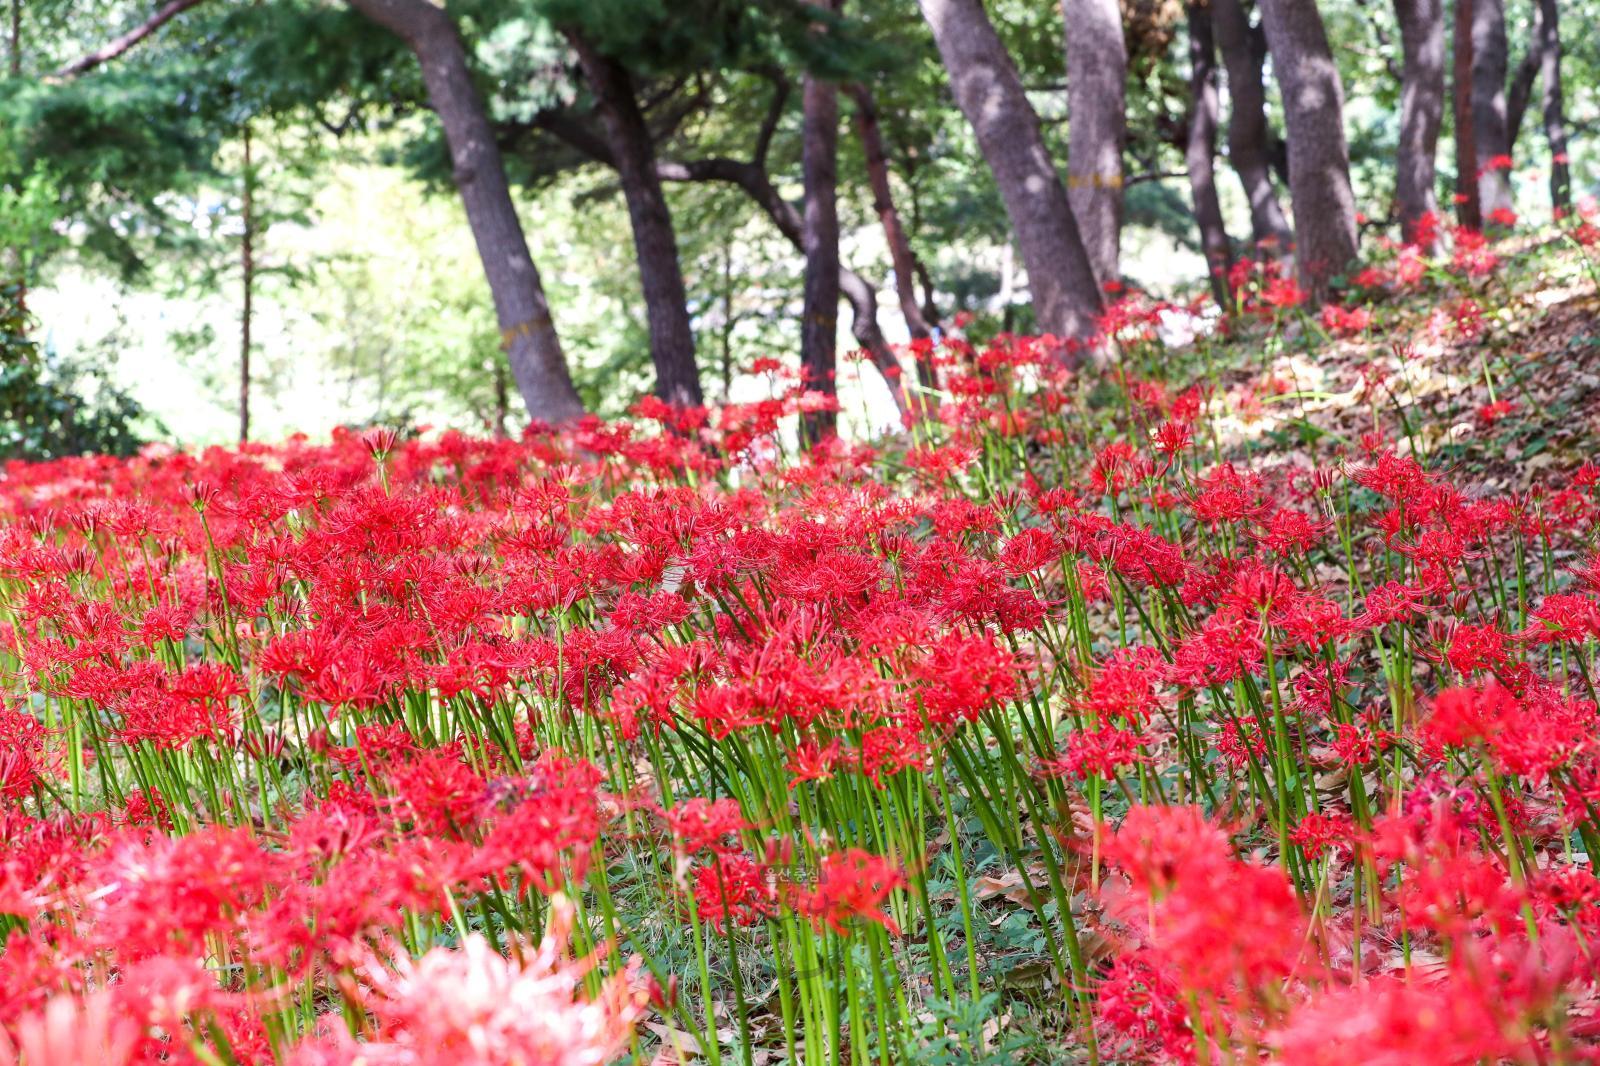 선암호수공원 꽃무릇 - 울남9경 의 사진